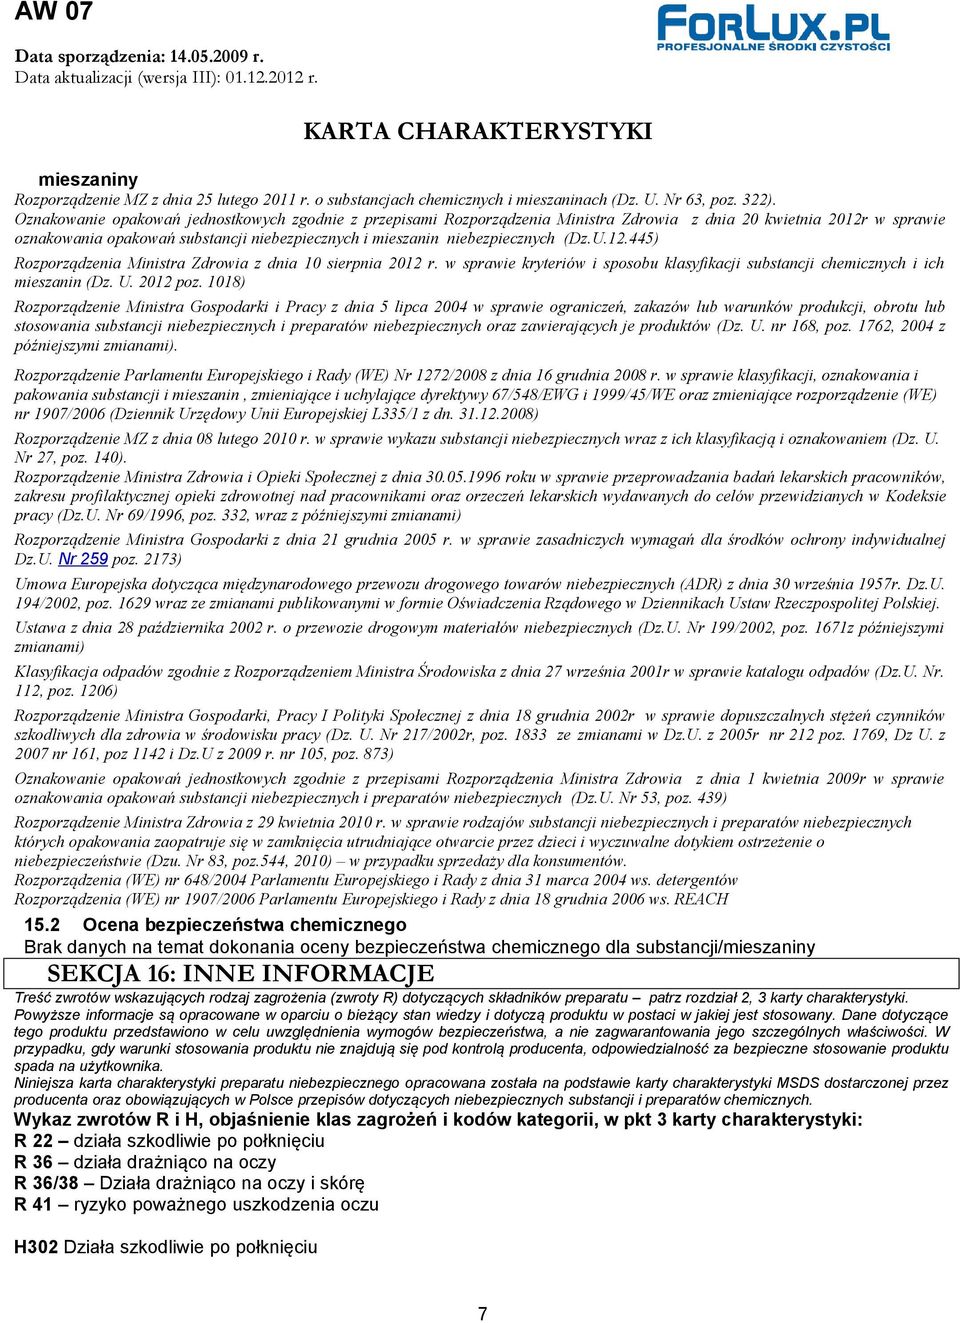 (Dz.U.12.445) Rozporządzenia Ministra Zdrowia z dnia 10 sierpnia 2012 r. w sprawie kryteriów i sposobu klasyfikacji substancji chemicznych i ich mieszanin (Dz. U. 2012 poz.